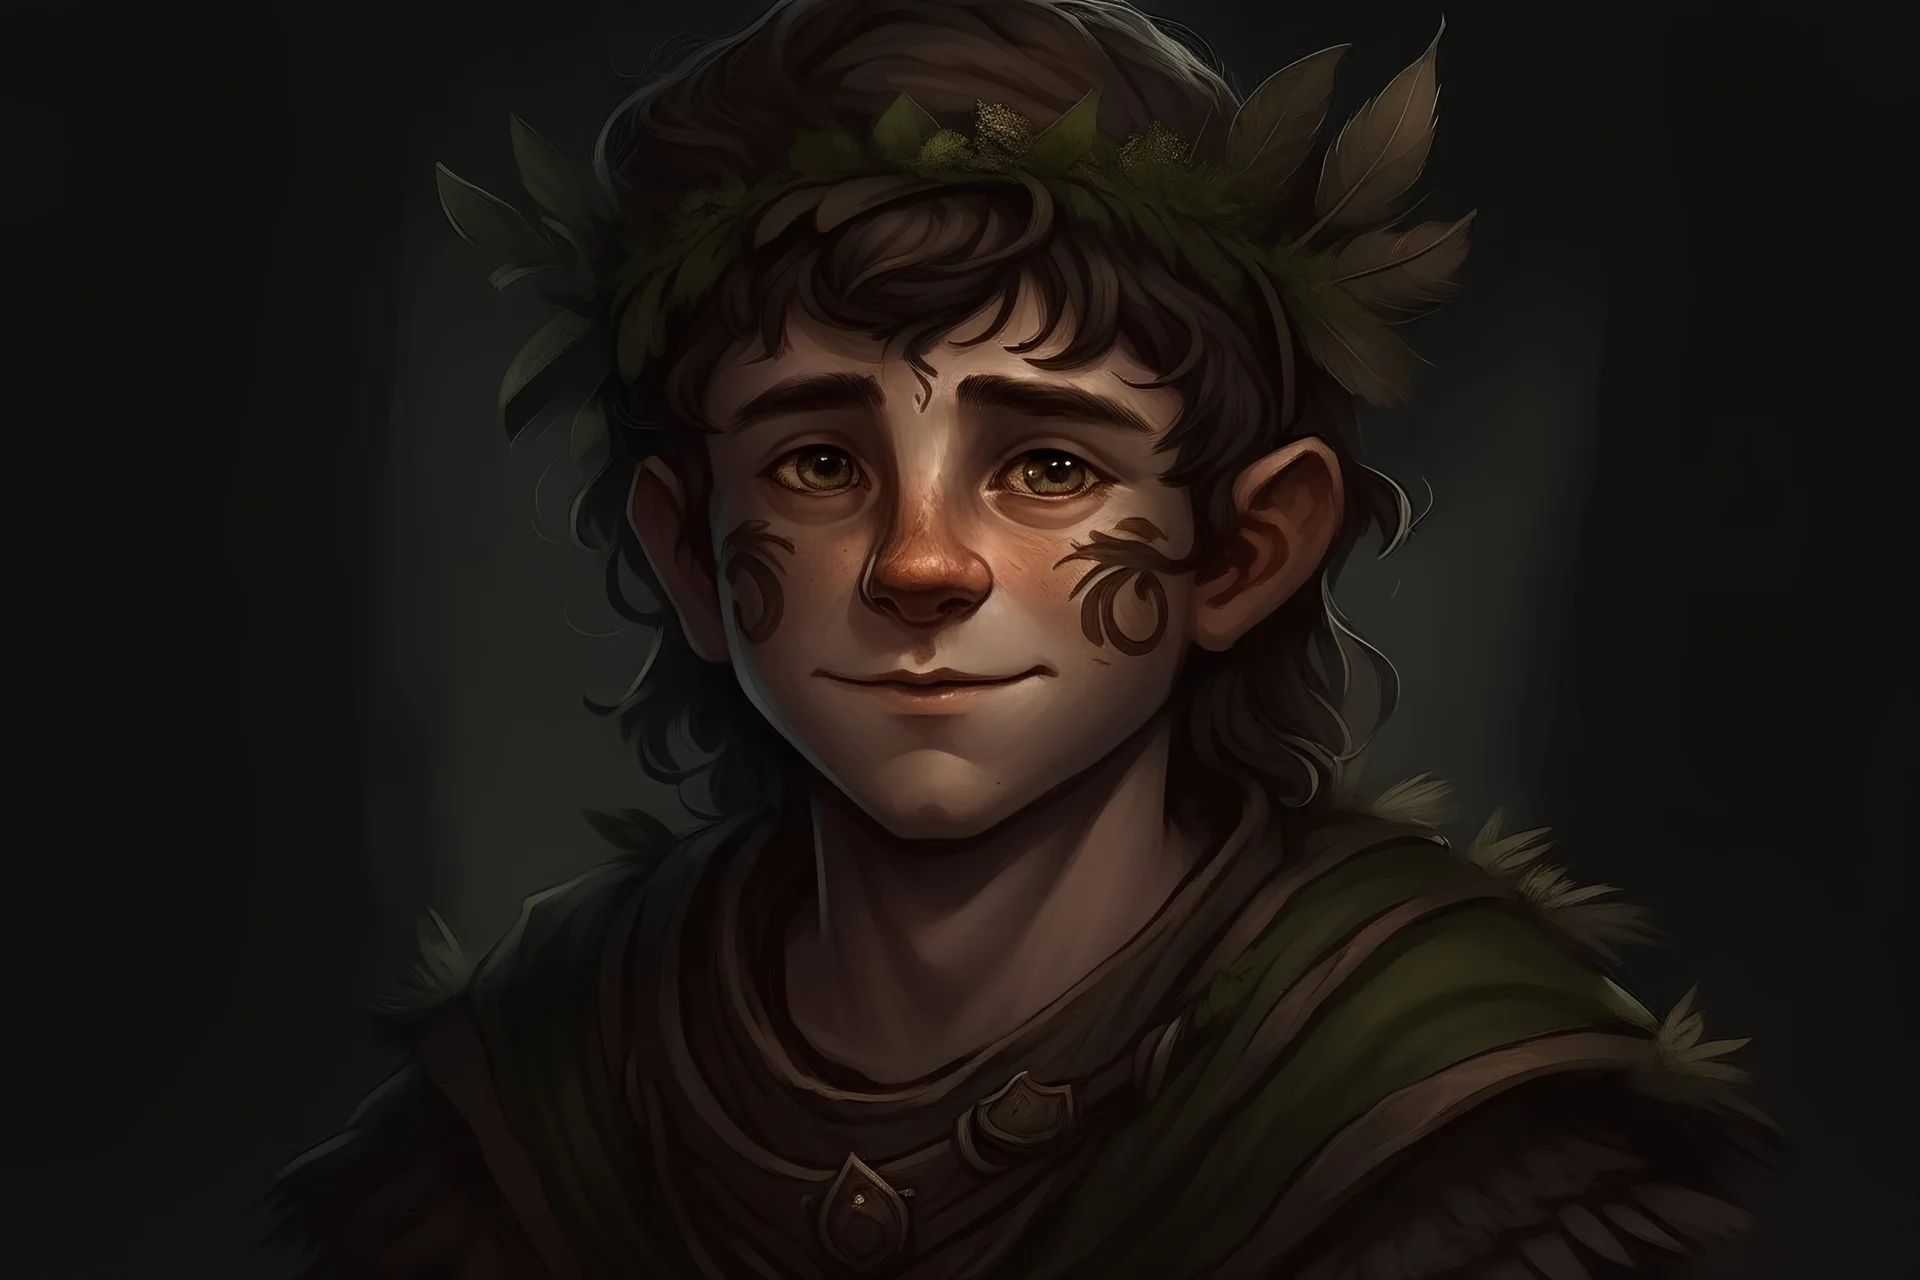 halfling druid portrait with dark tones